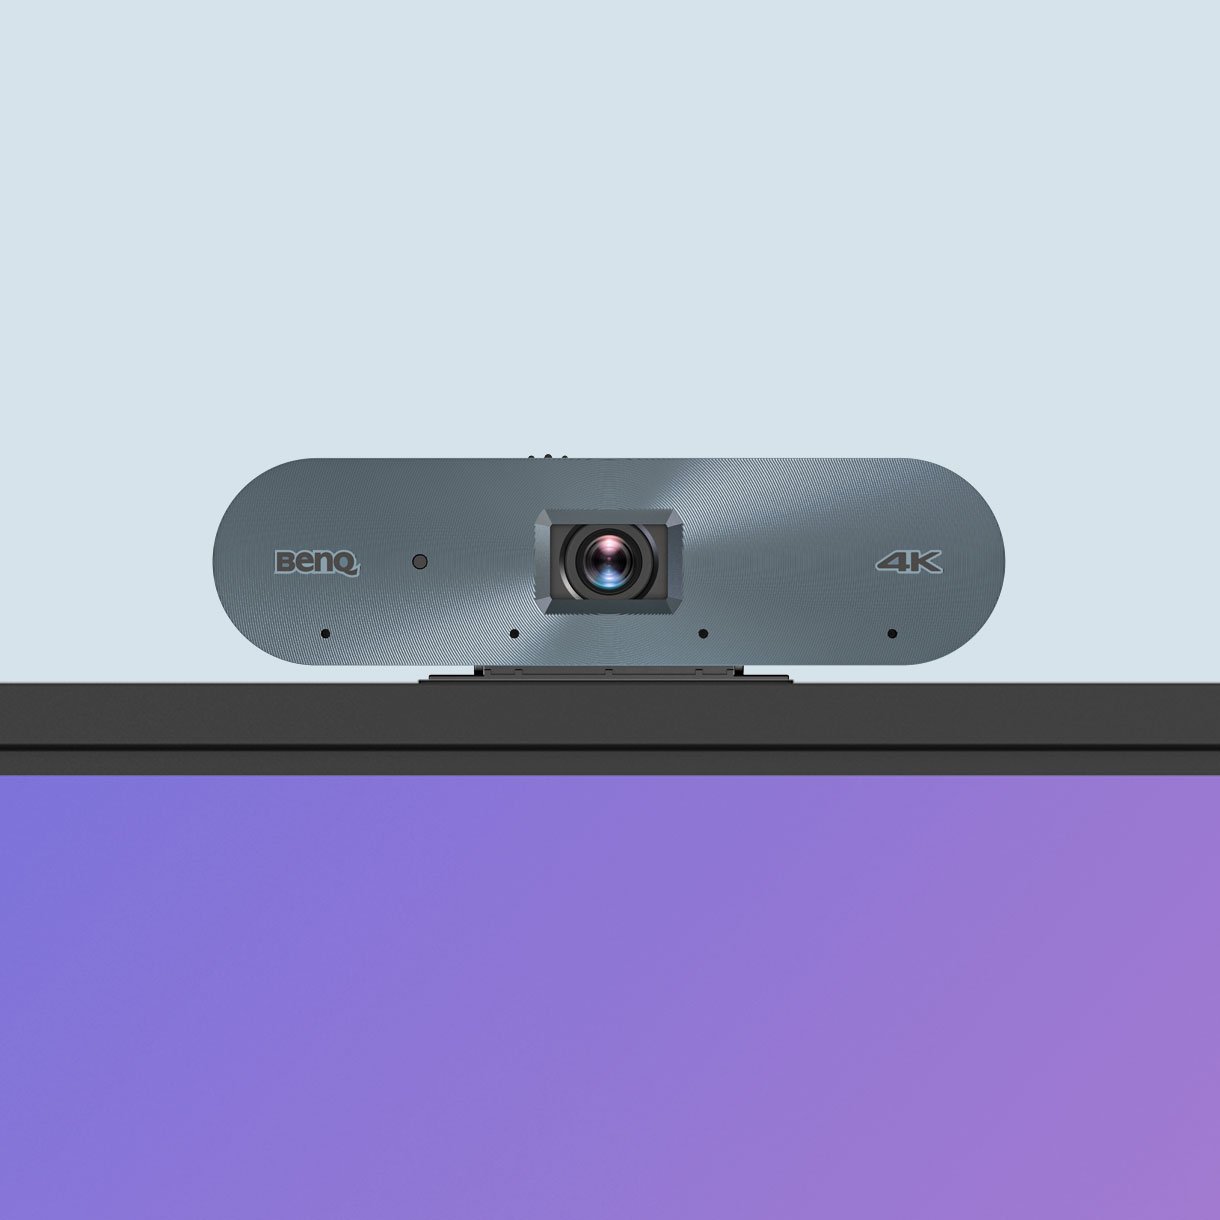 Zachyťte vysoce kvalitní video pomocí kamery BenQ Board AI, zajistěte si čistý a dynamický obraz, který je ideální pro streamování a nahrávání.